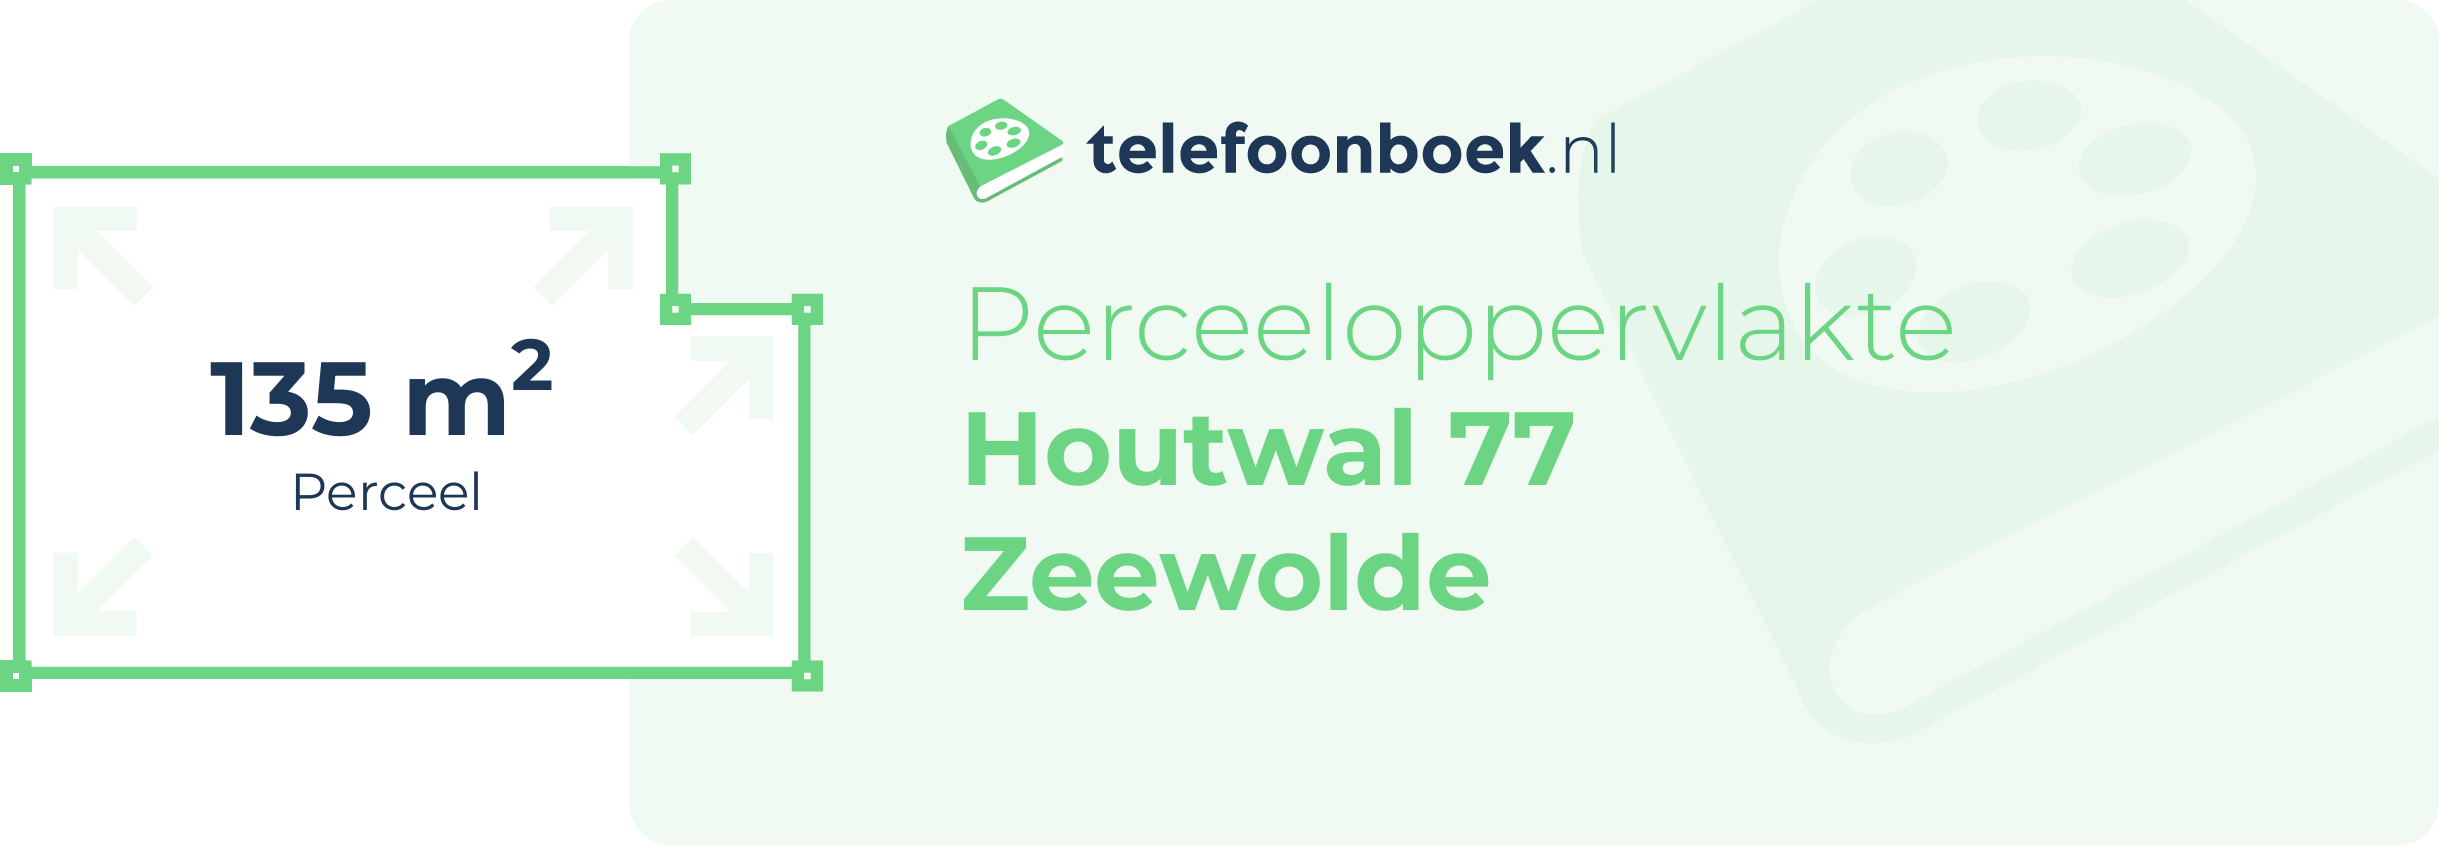 Perceeloppervlakte Houtwal 77 Zeewolde